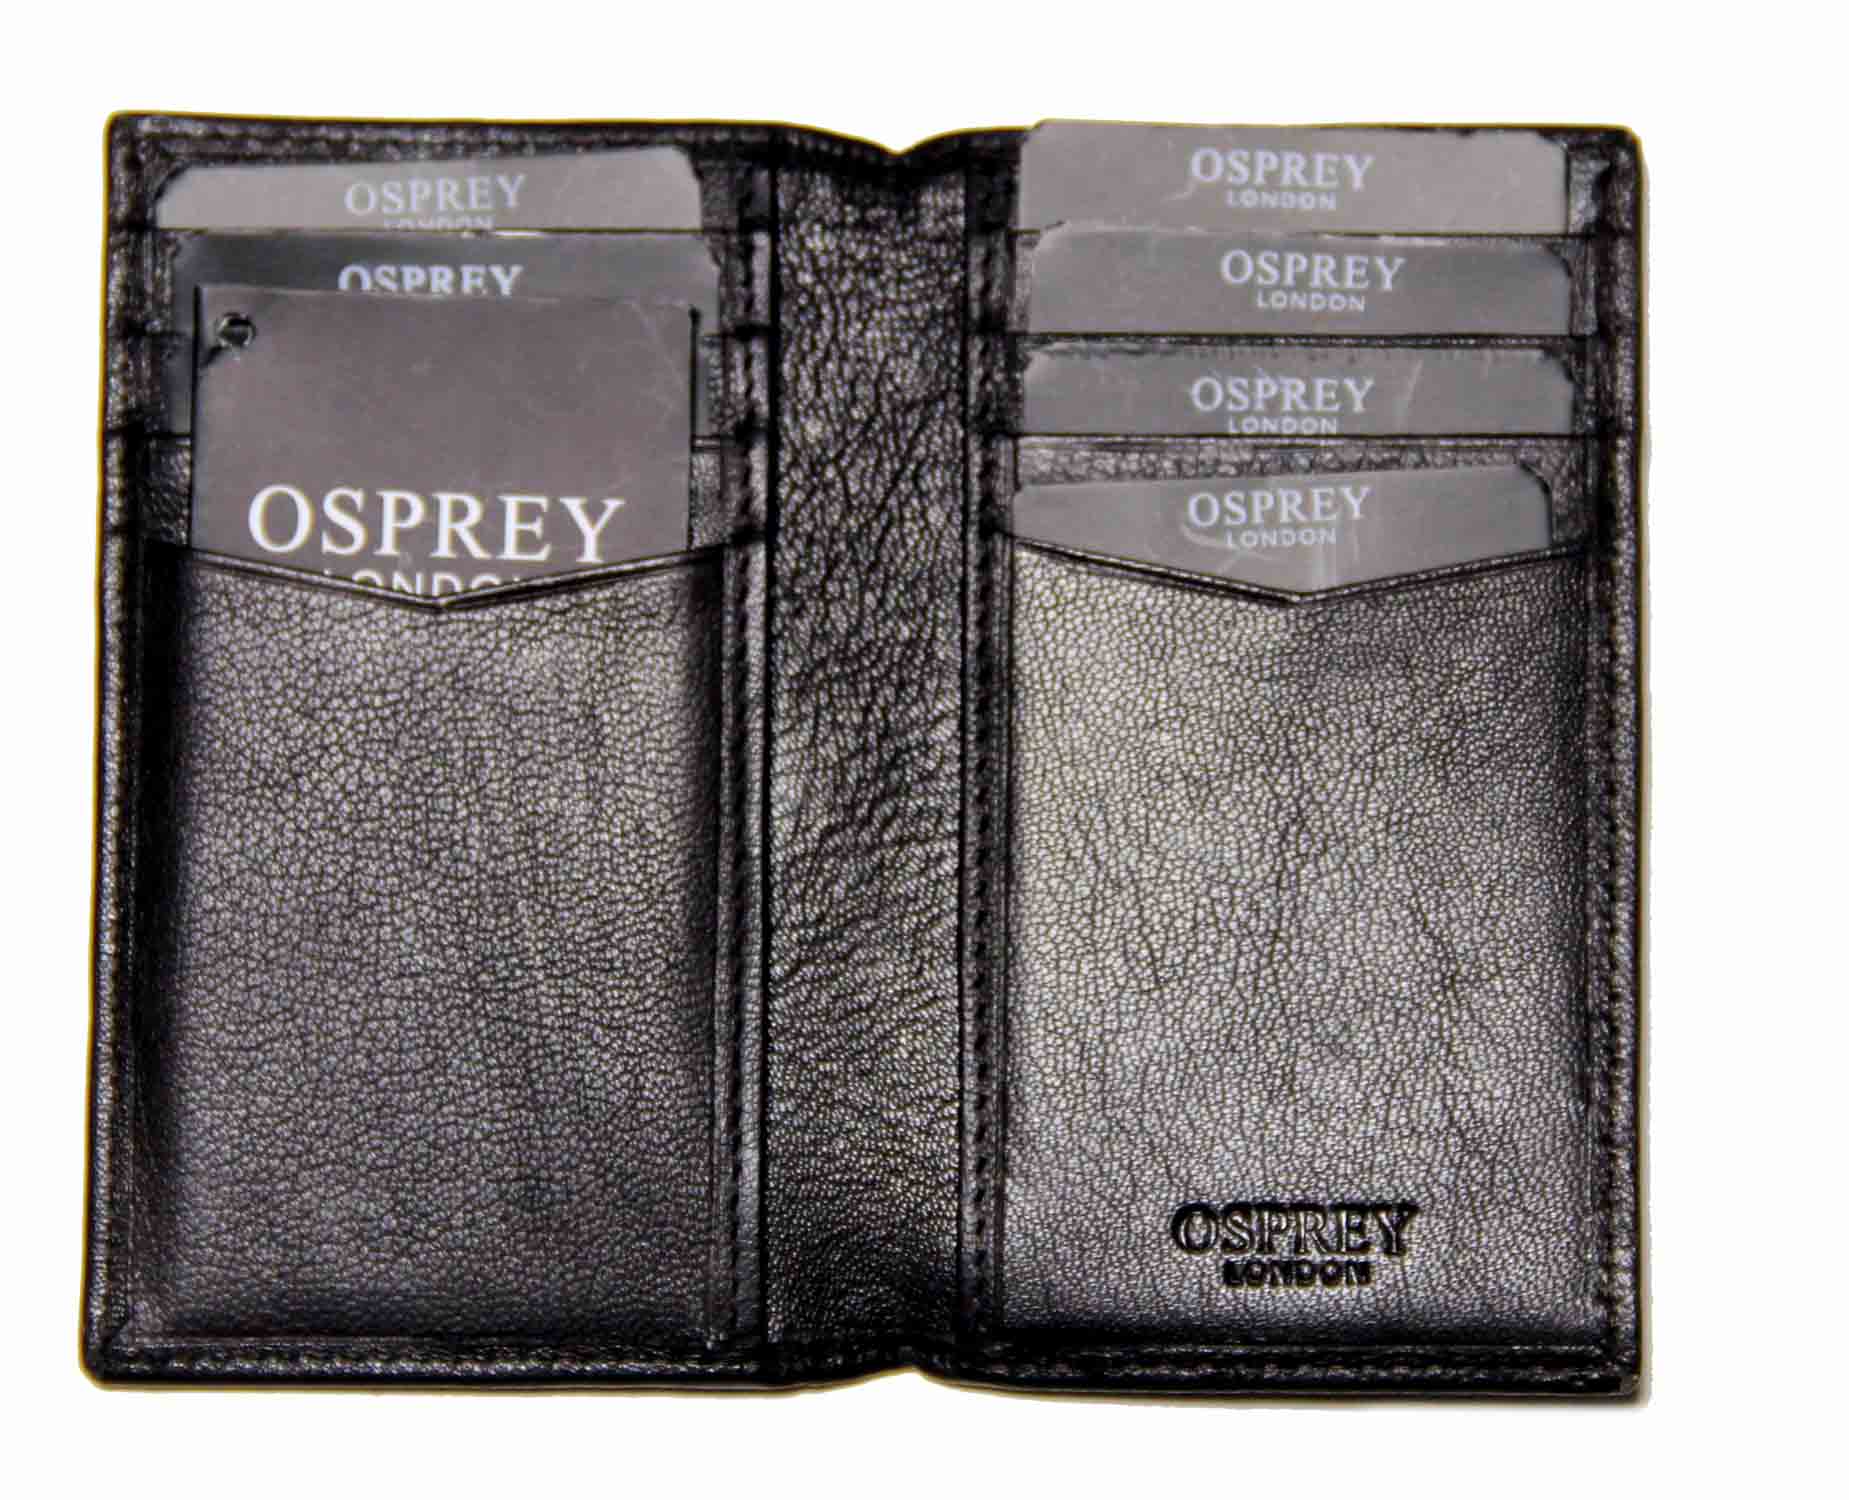 Osprey London Luxury Goat Skin Leather Wallet Black Men's